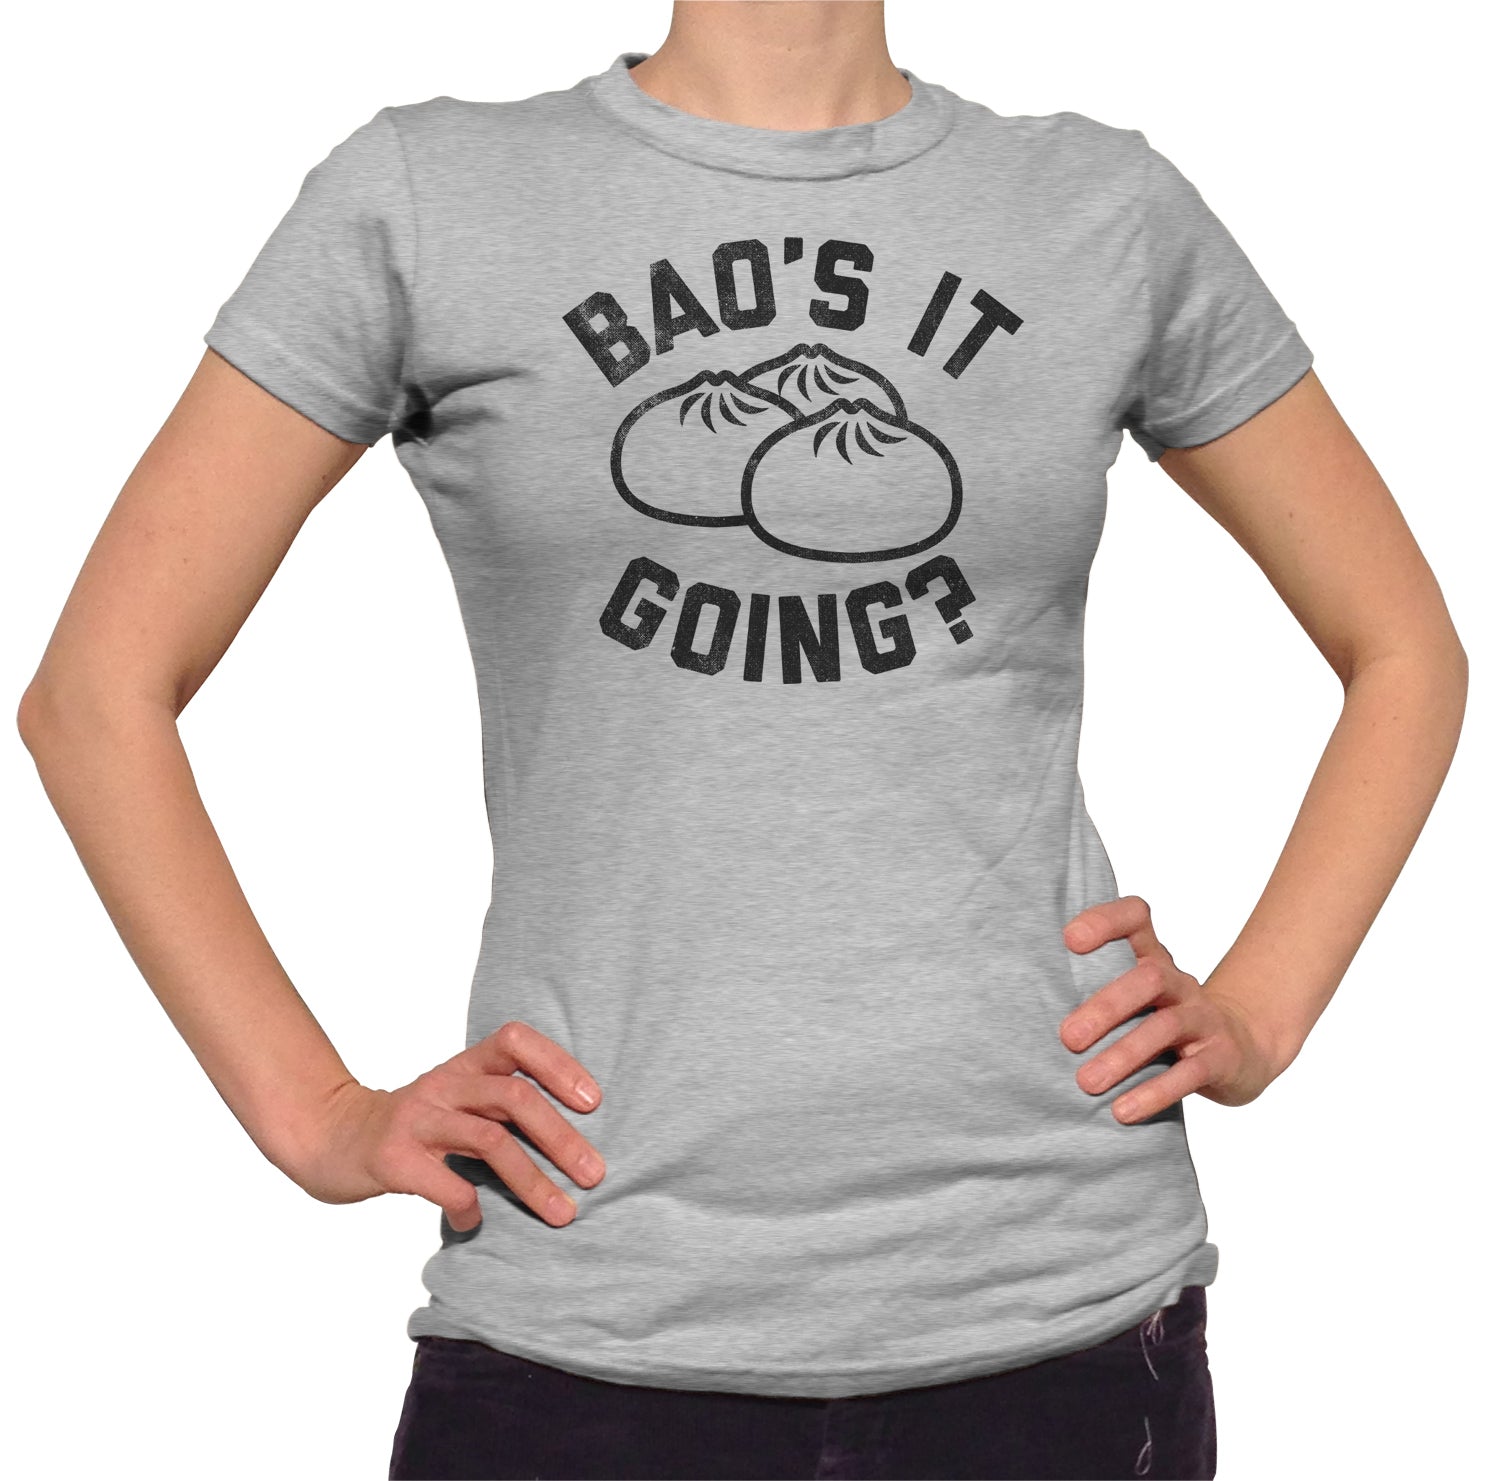 Women's Bao's It Going Dim Sum T-Shirt